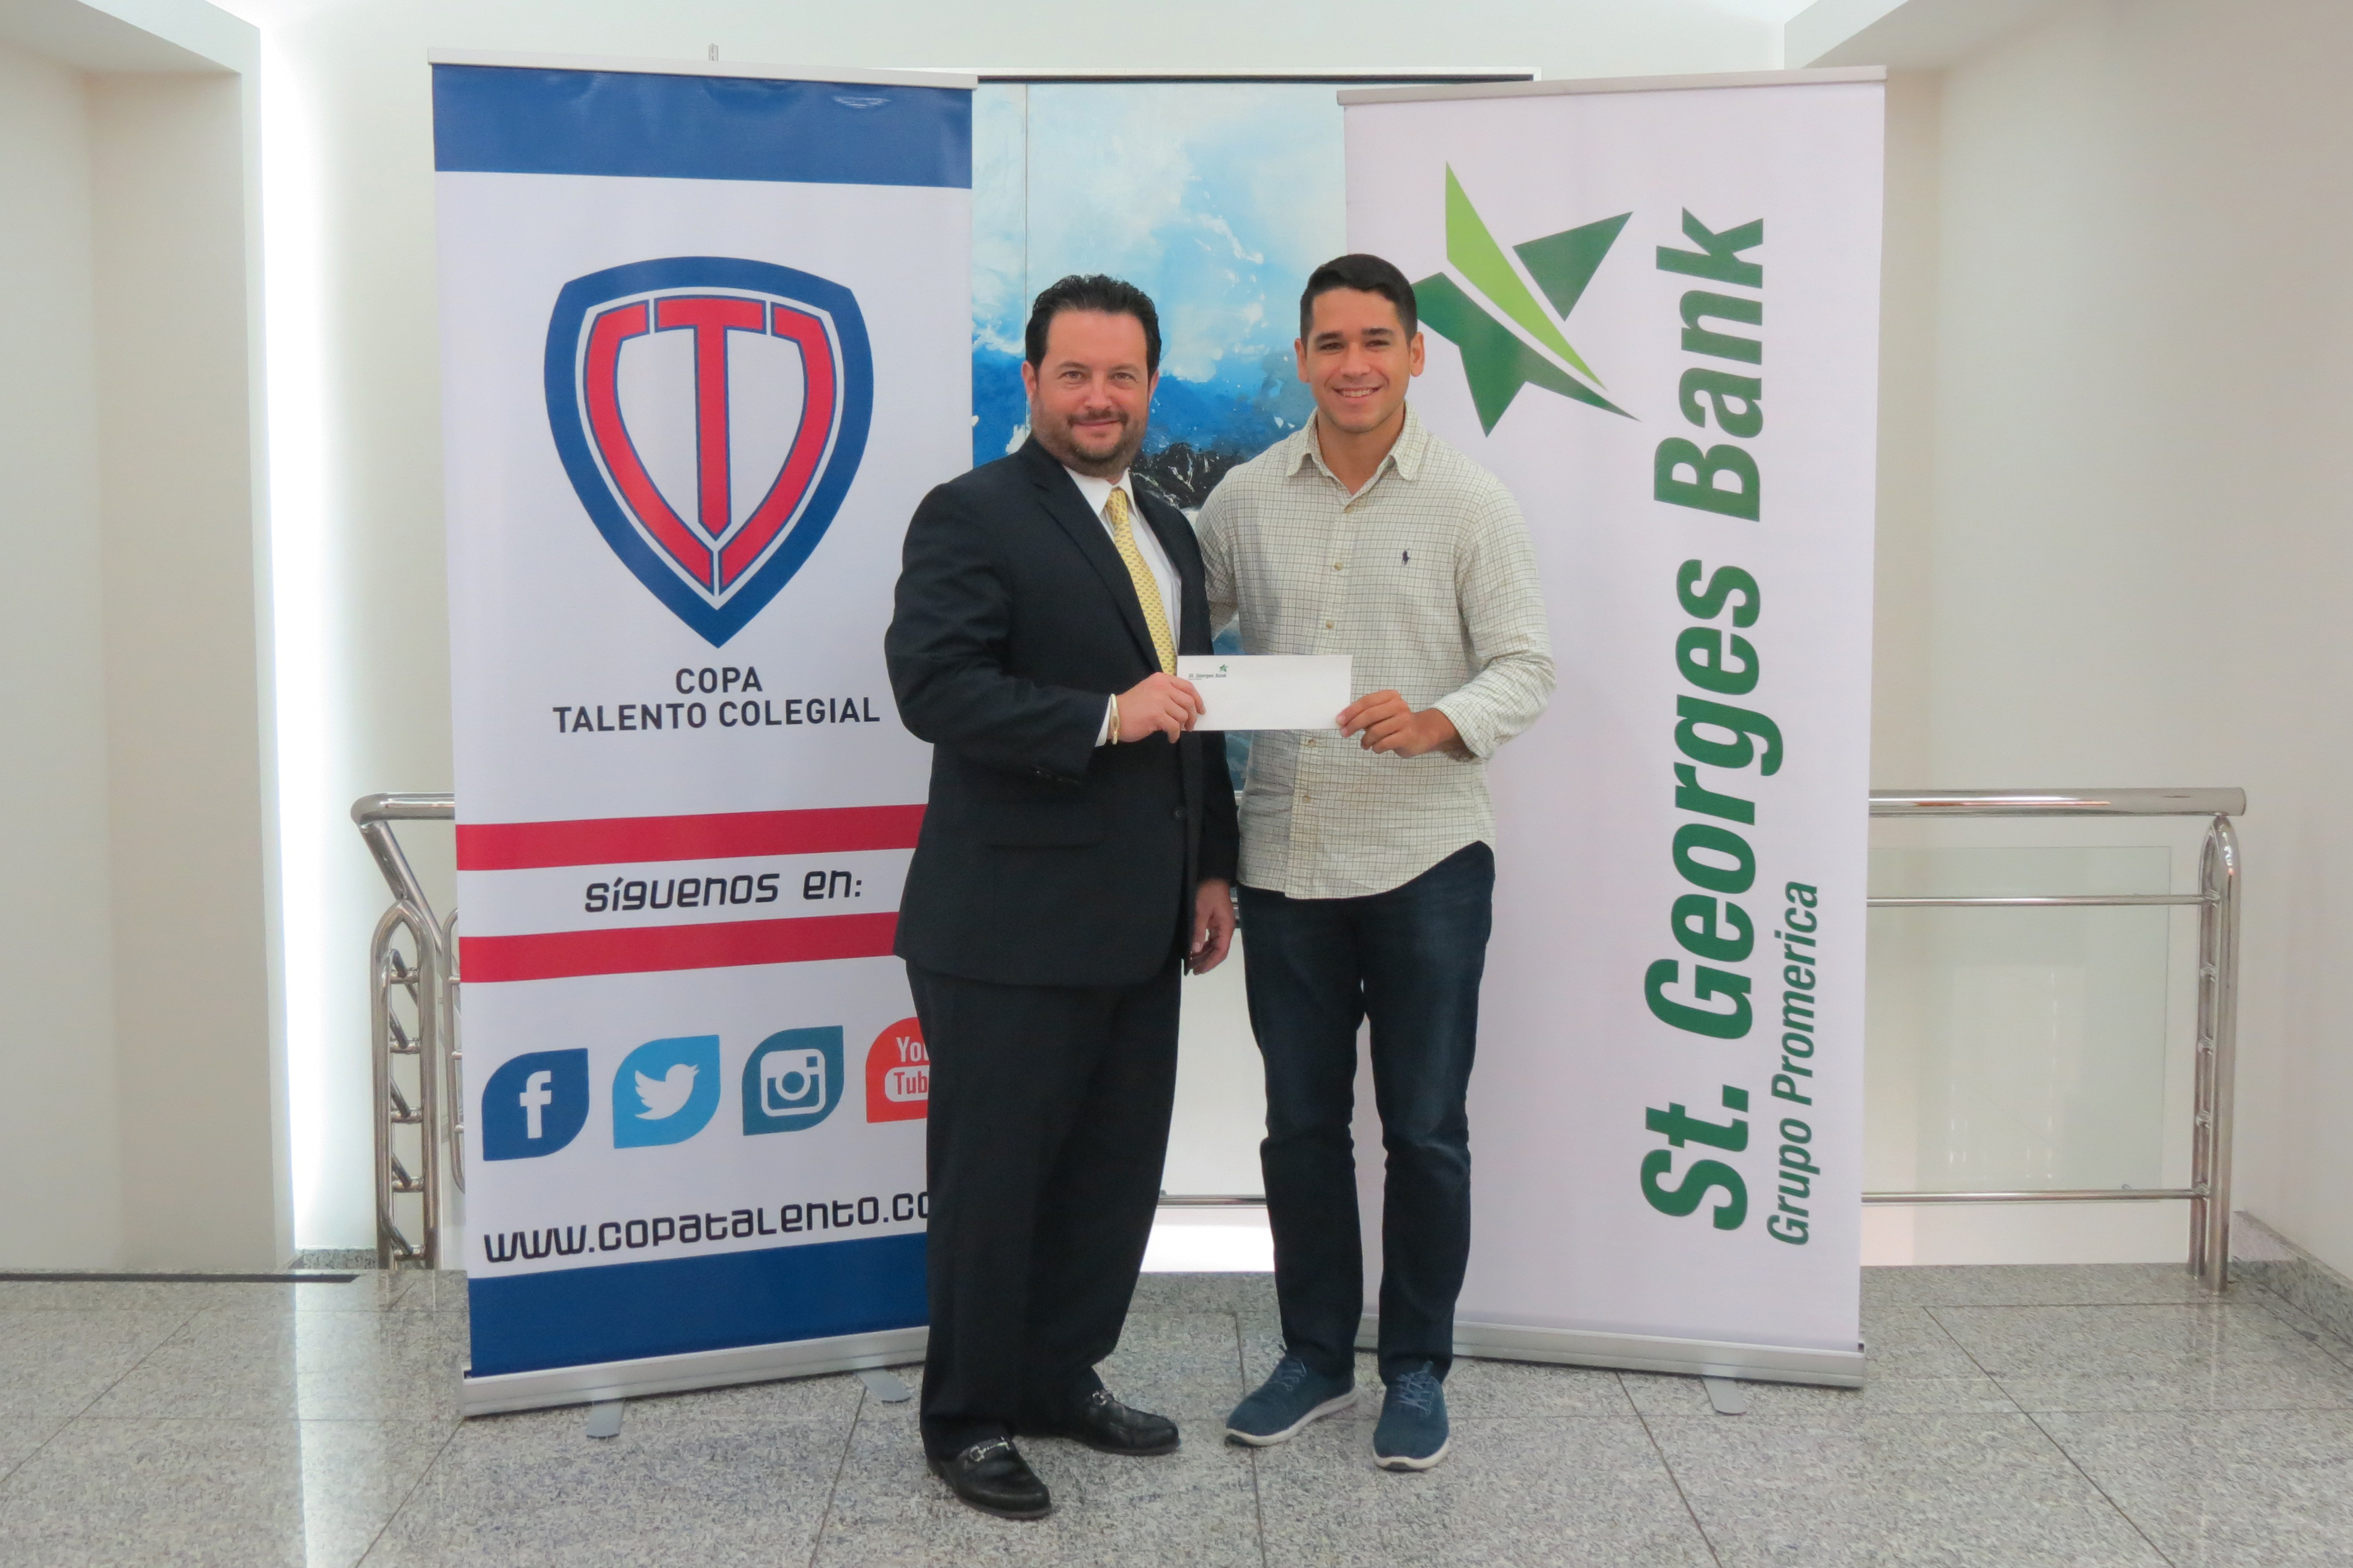 St. Georges Bank comprometido con el talento en Panamá